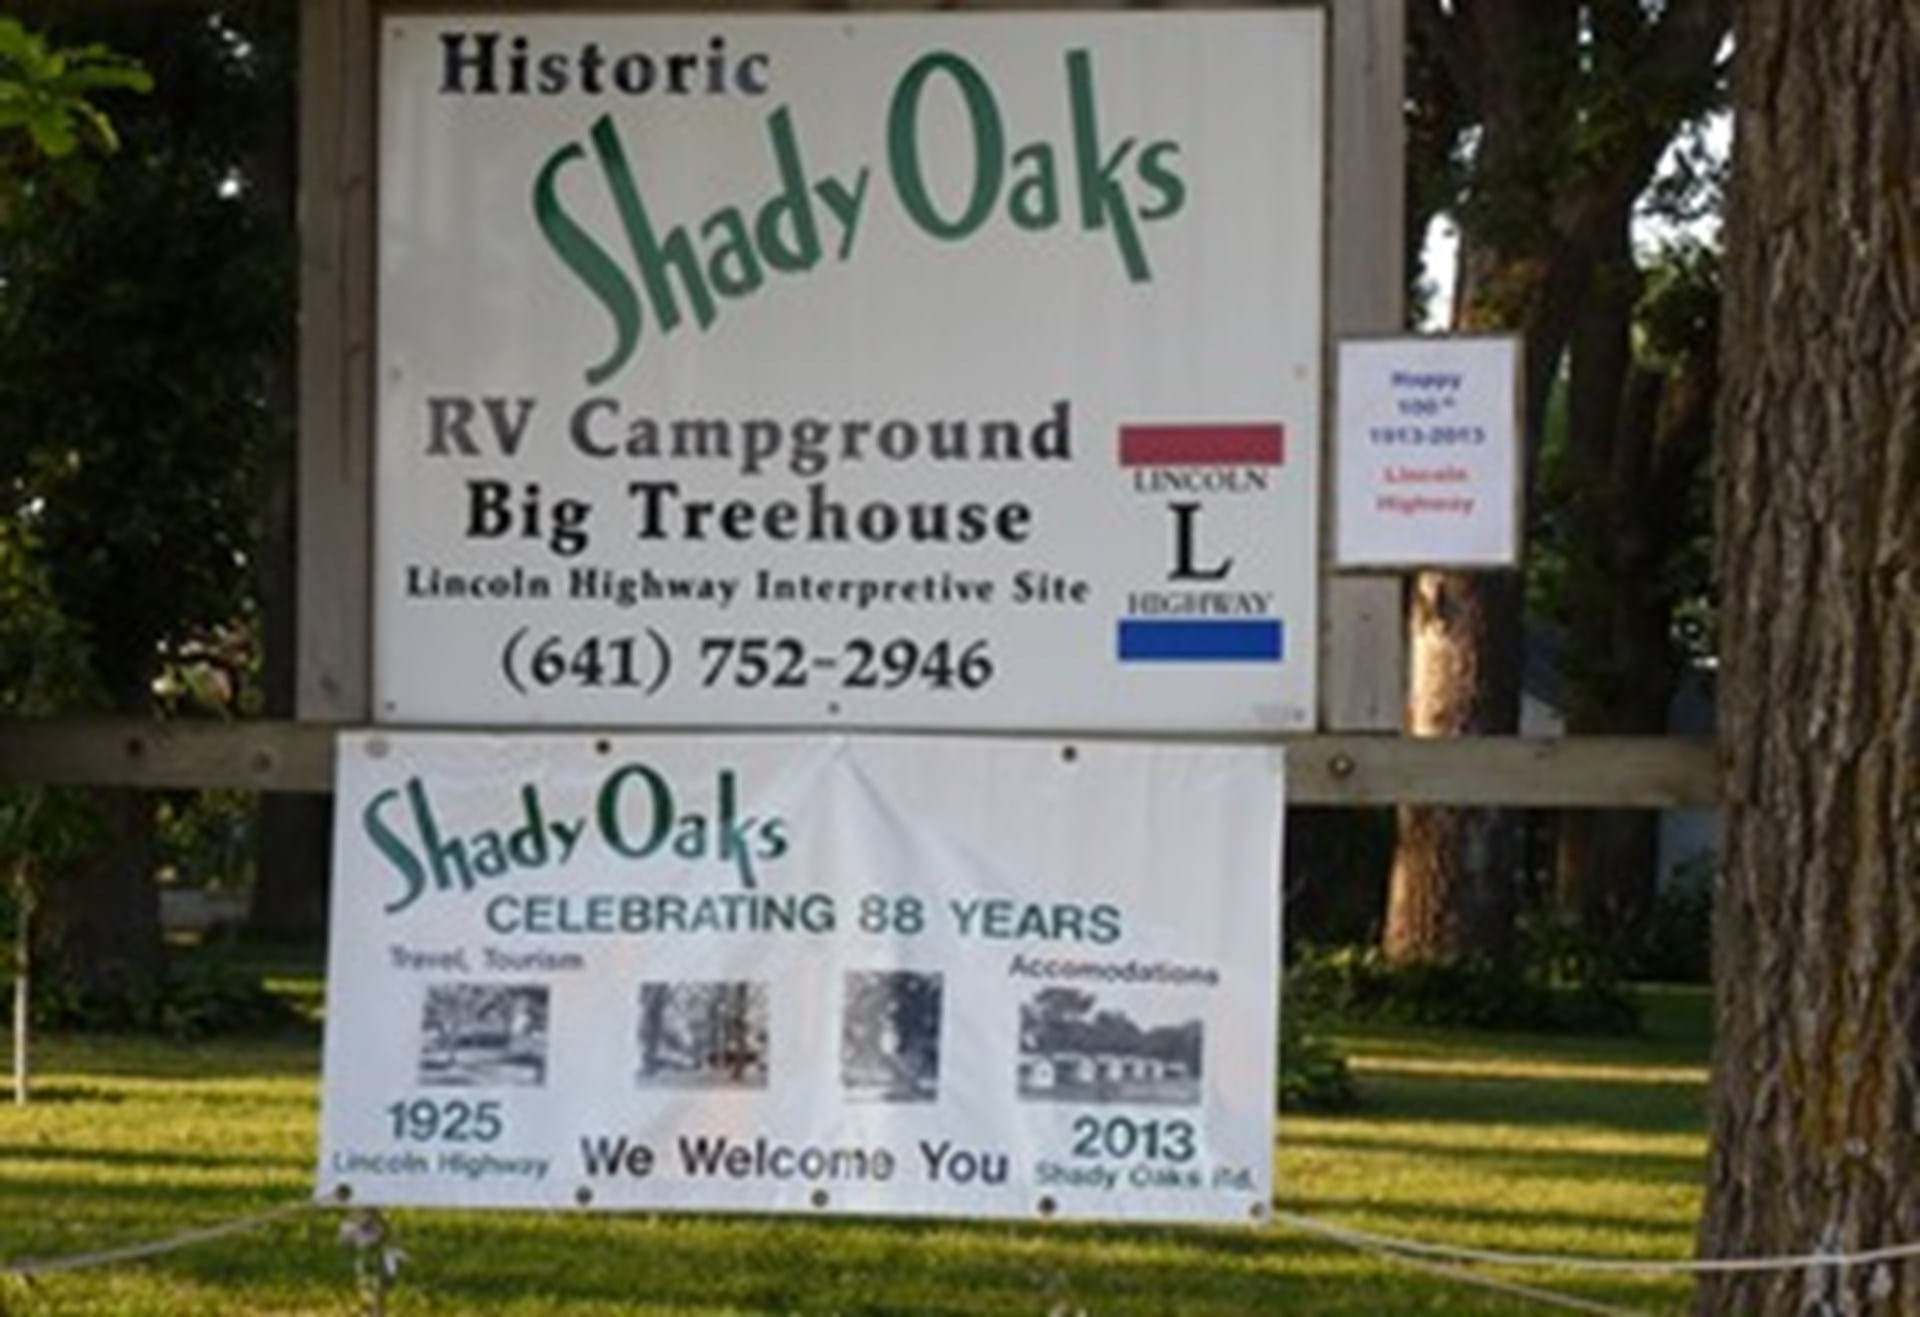 Entrance to Shady Oaks